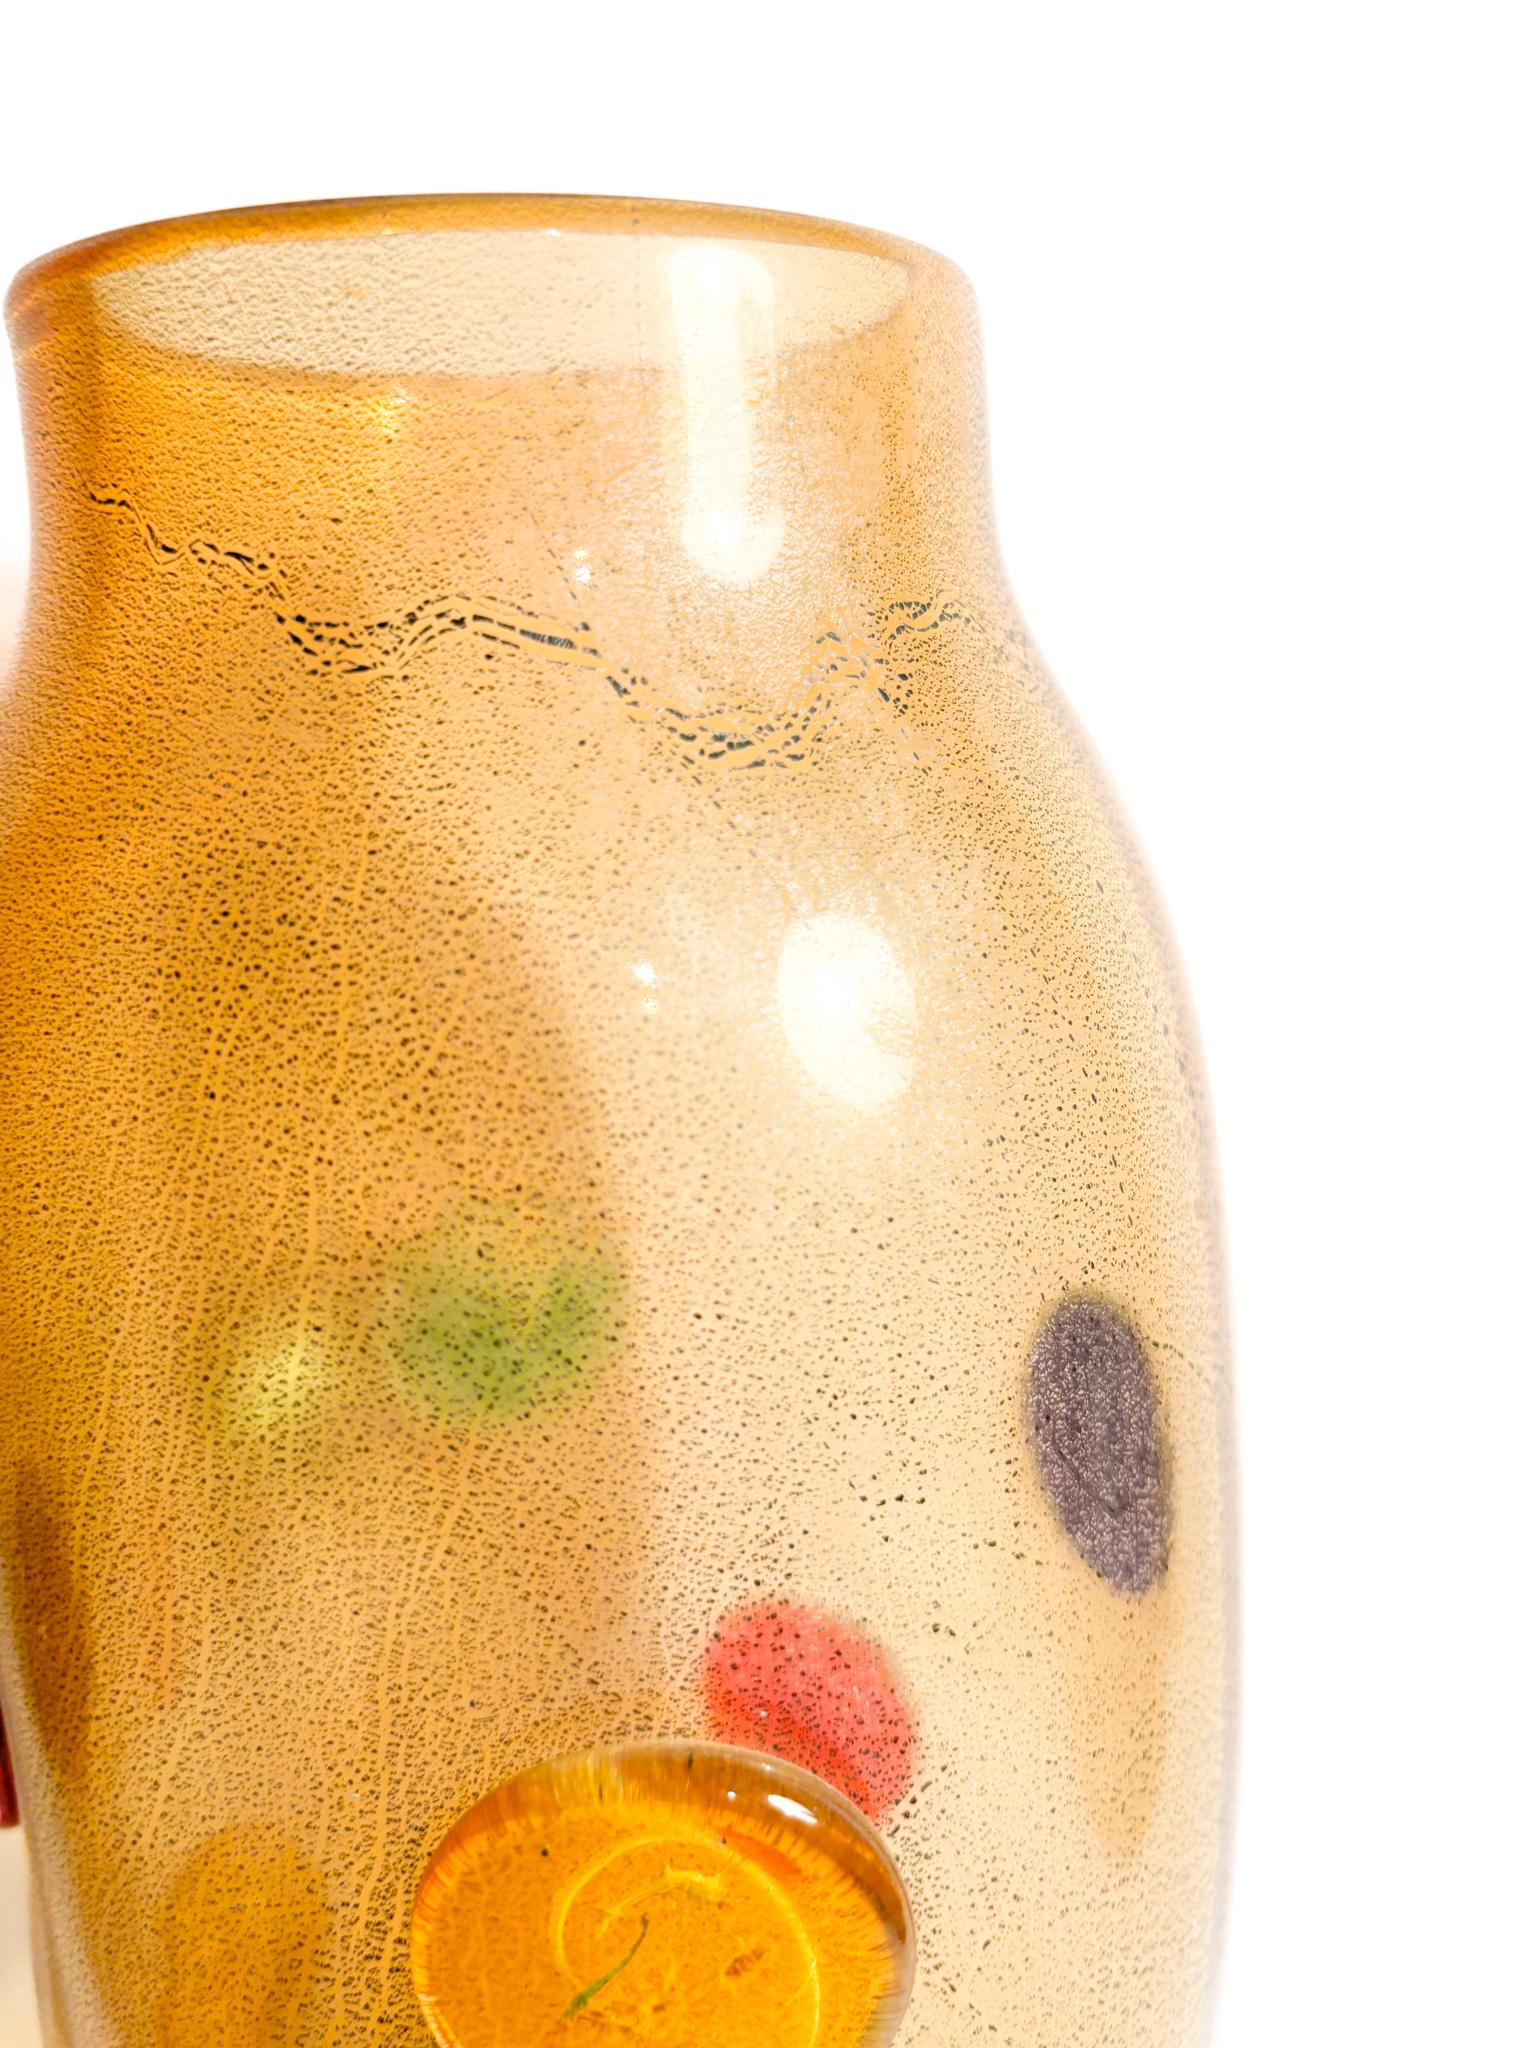 Vase multicolore en verre de Murano avec feuilles d'or, réalisé par La Murrina dans les années 1980.

Ø 12 cm h 33 cm

La Murrina est une entreprise de renom spécialisée dans la création de produits en verre exquis à Murano. La Murrina a été fondée